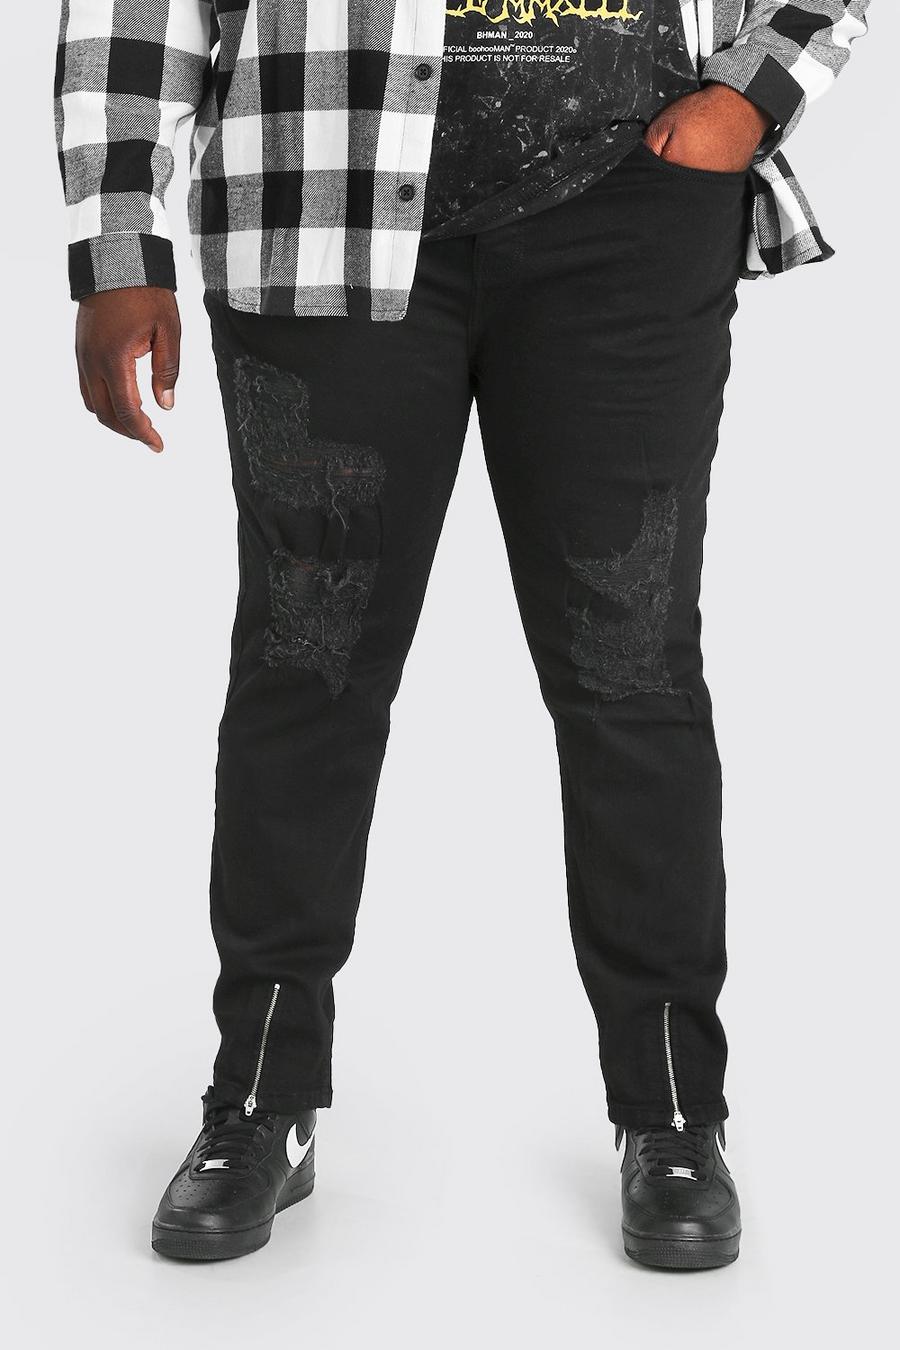 שחור מכנסי ג'ינס בגזרת סקיני עם הרבה קרעים לגברים גדולים וגבוהים image number 1